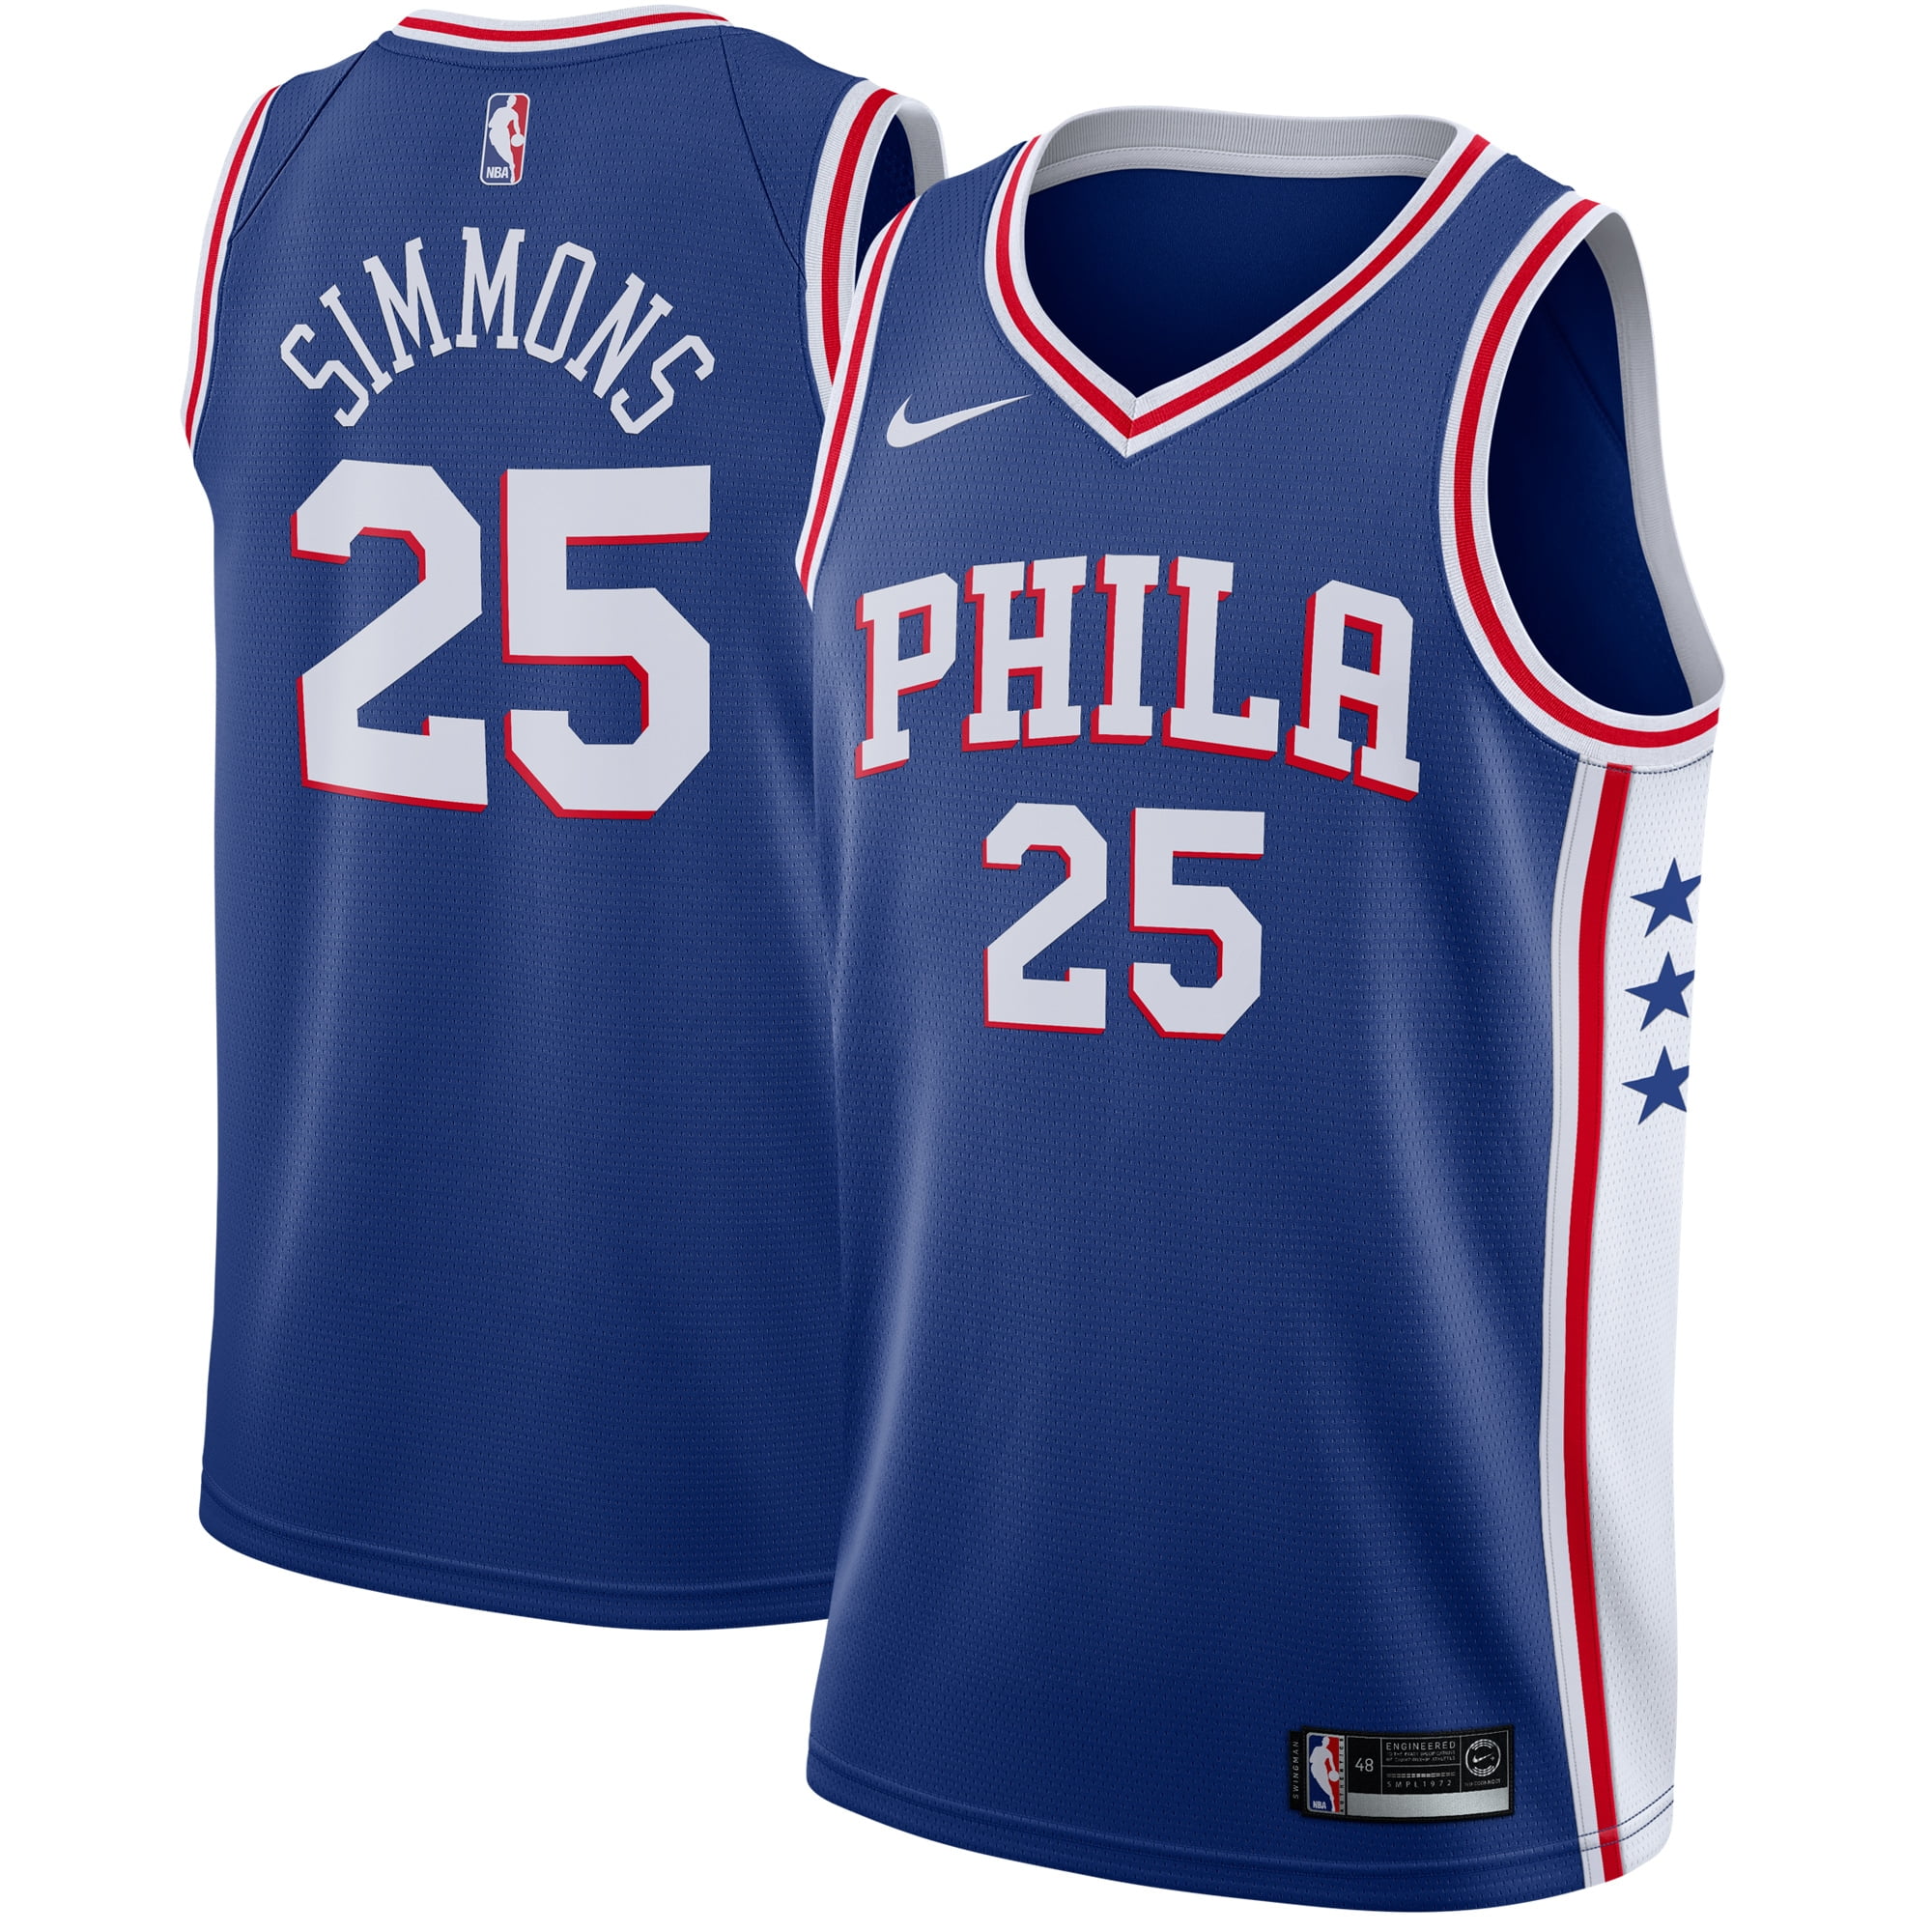 Philadelphia 76ers Nike Swingman Jersey 